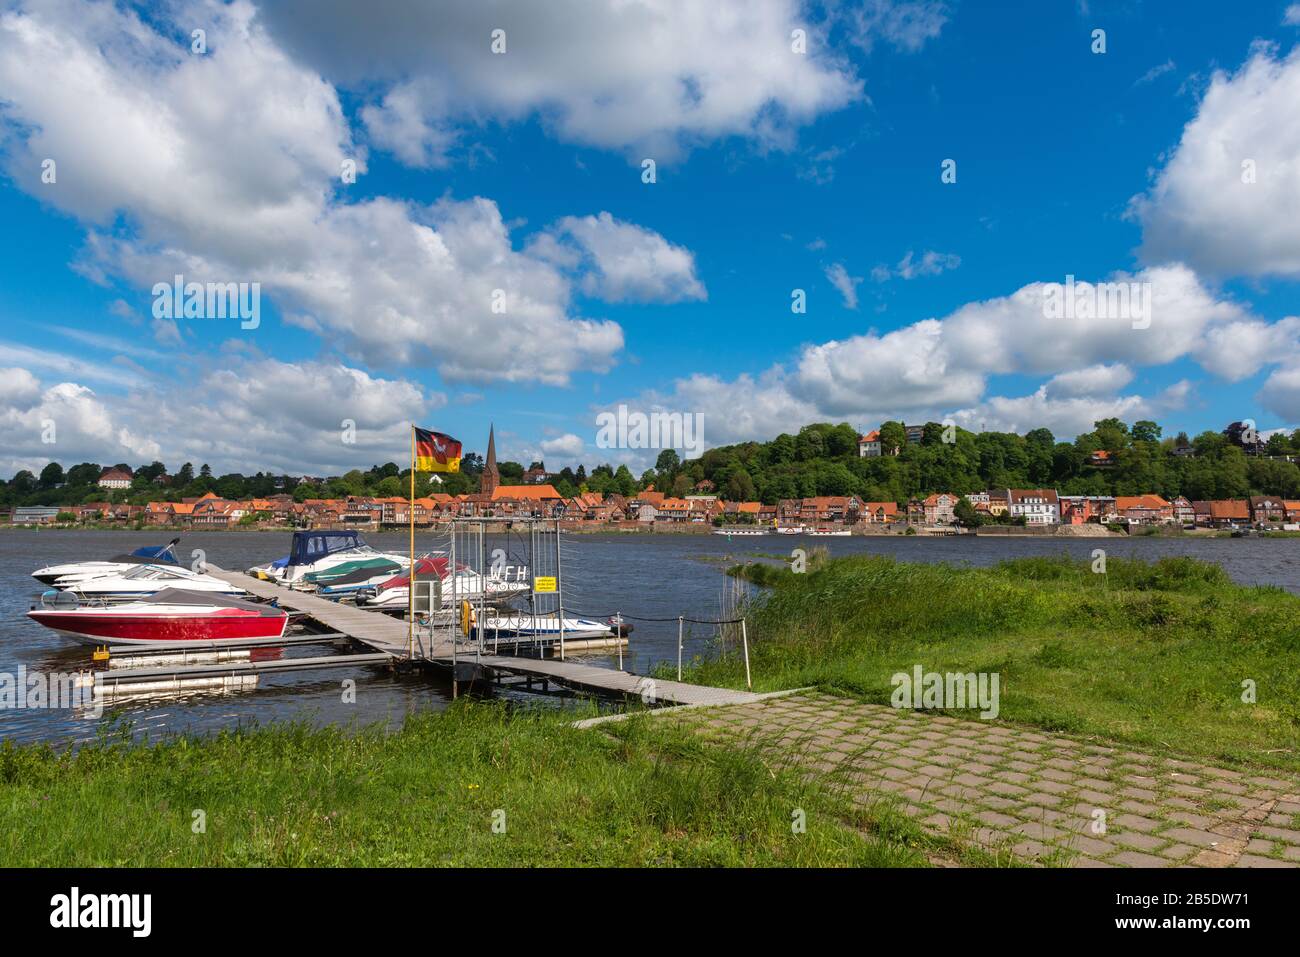 Città storica di Lauenburg sul fiume Elba, Contea di Lauenburg, Schleswig-Holstein, Germania settentrionale, Europa centrale Foto Stock